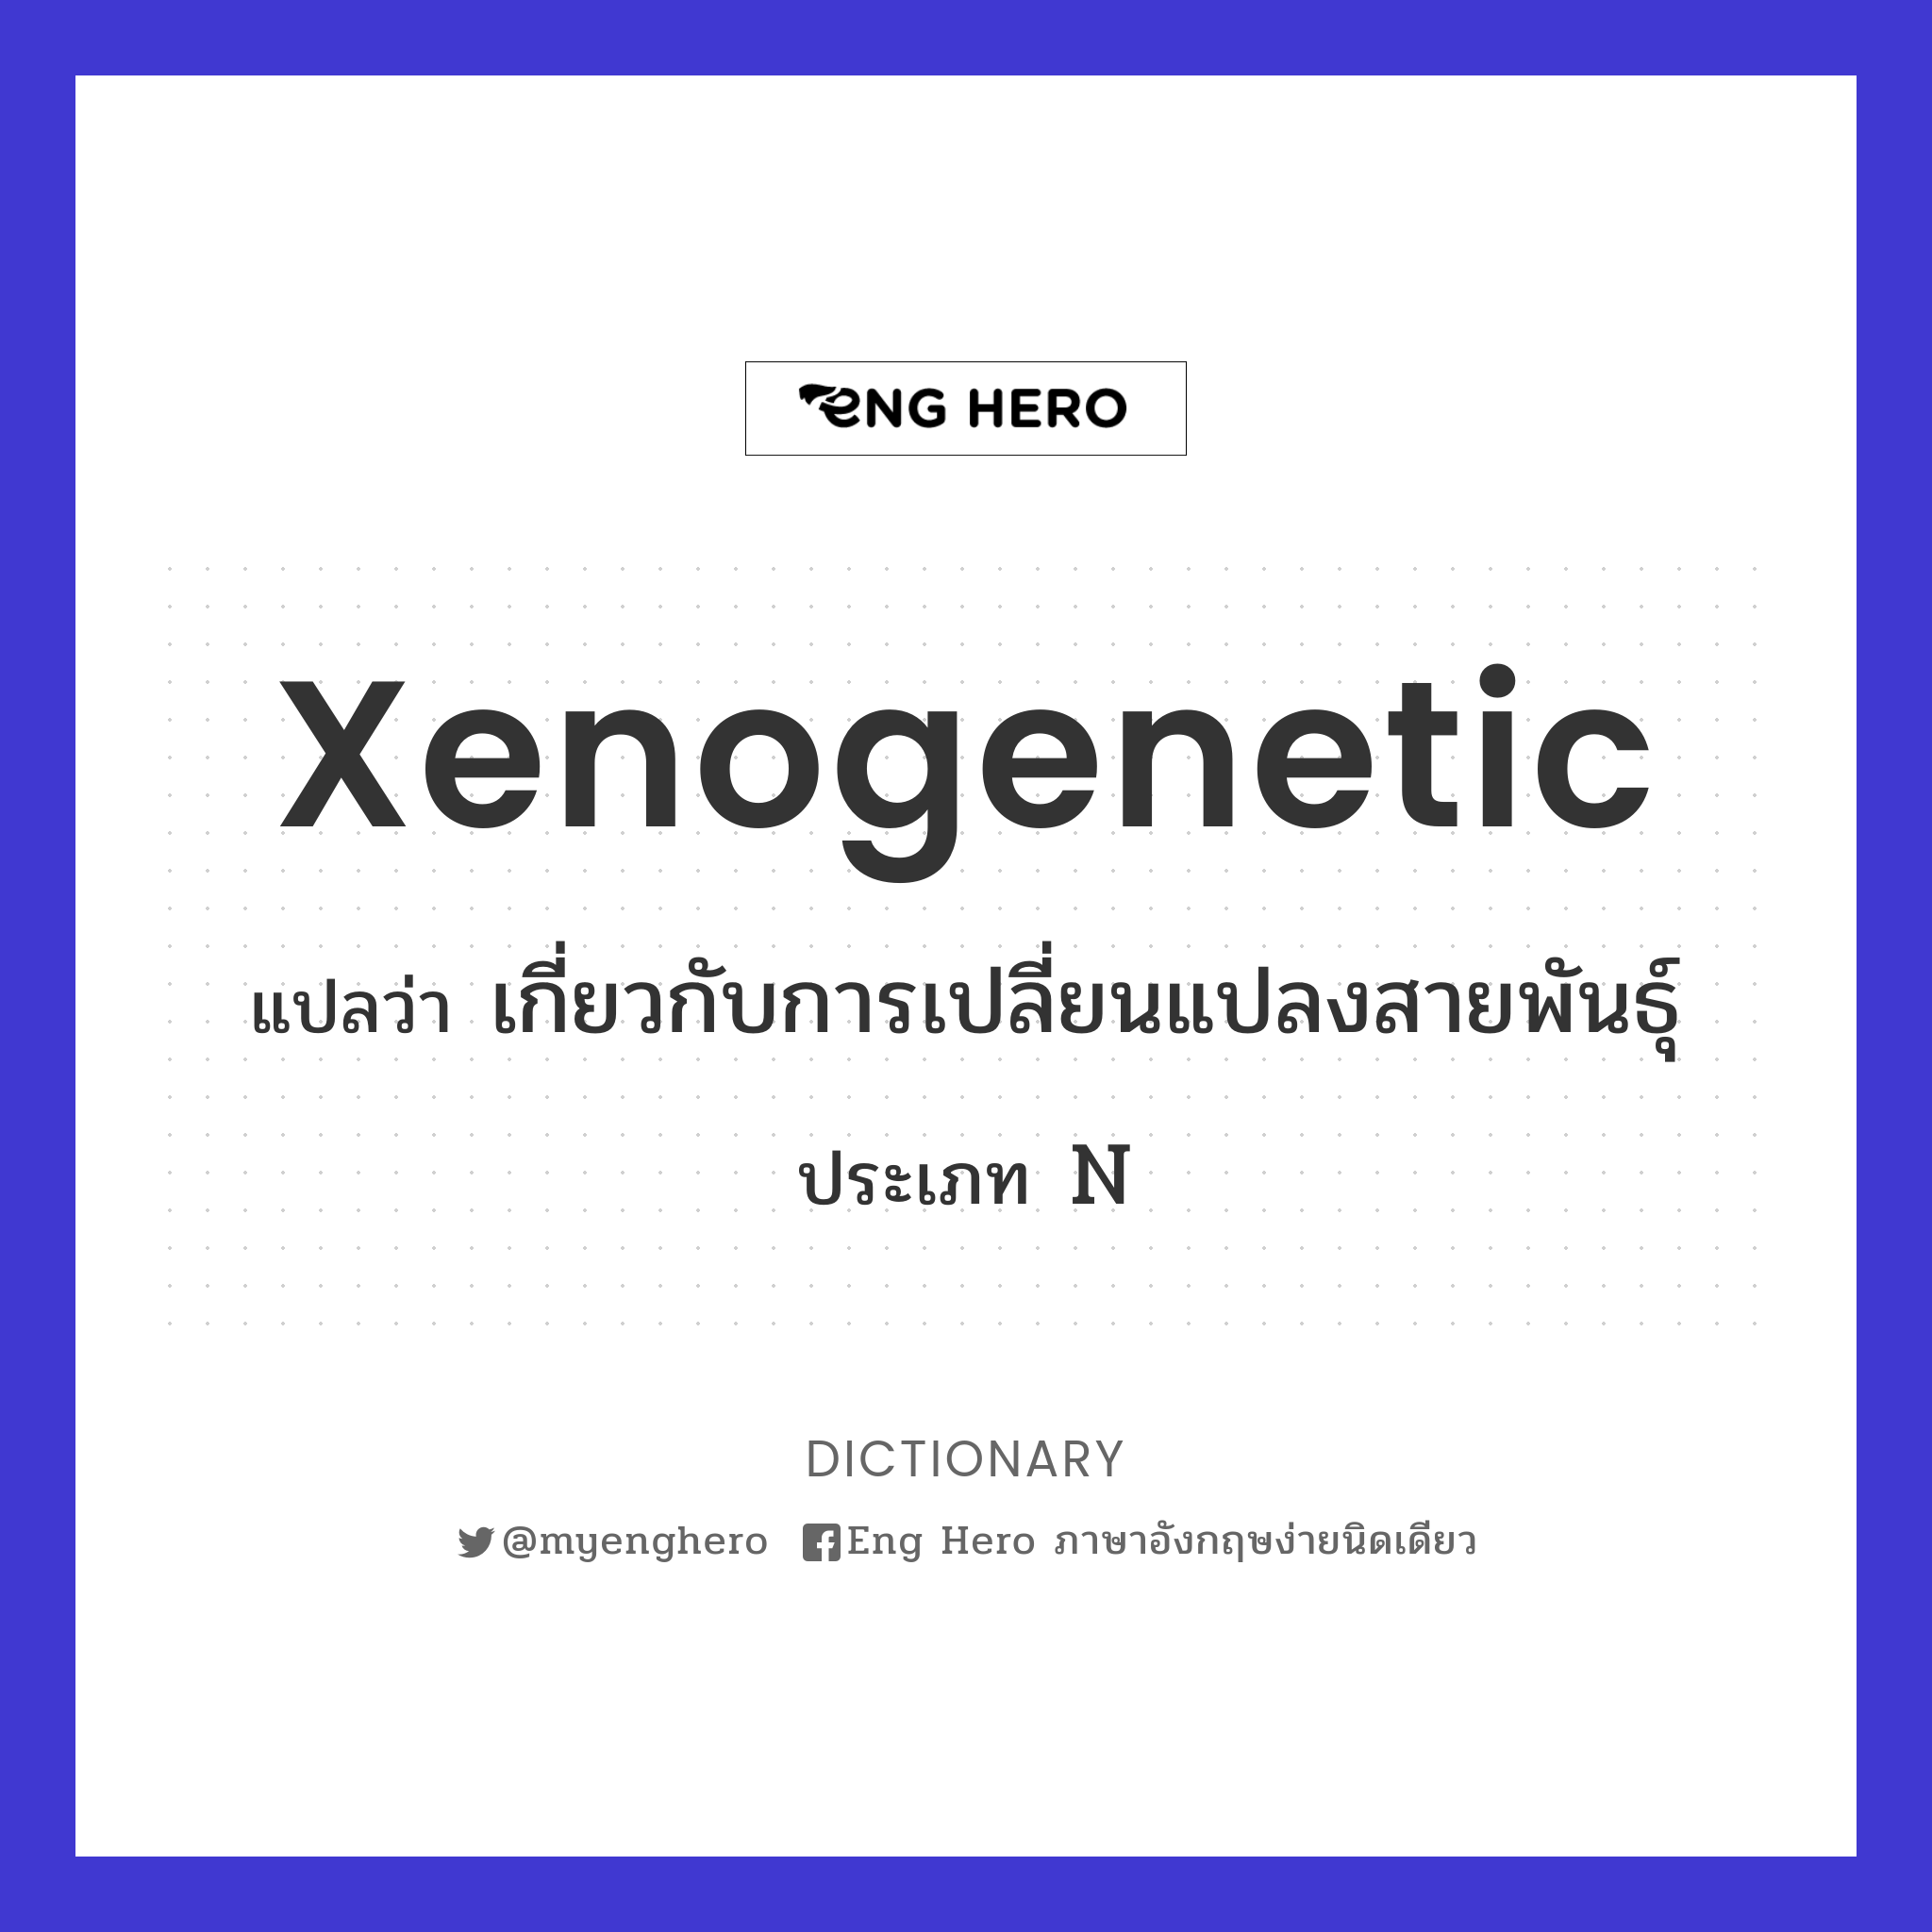 xenogenetic